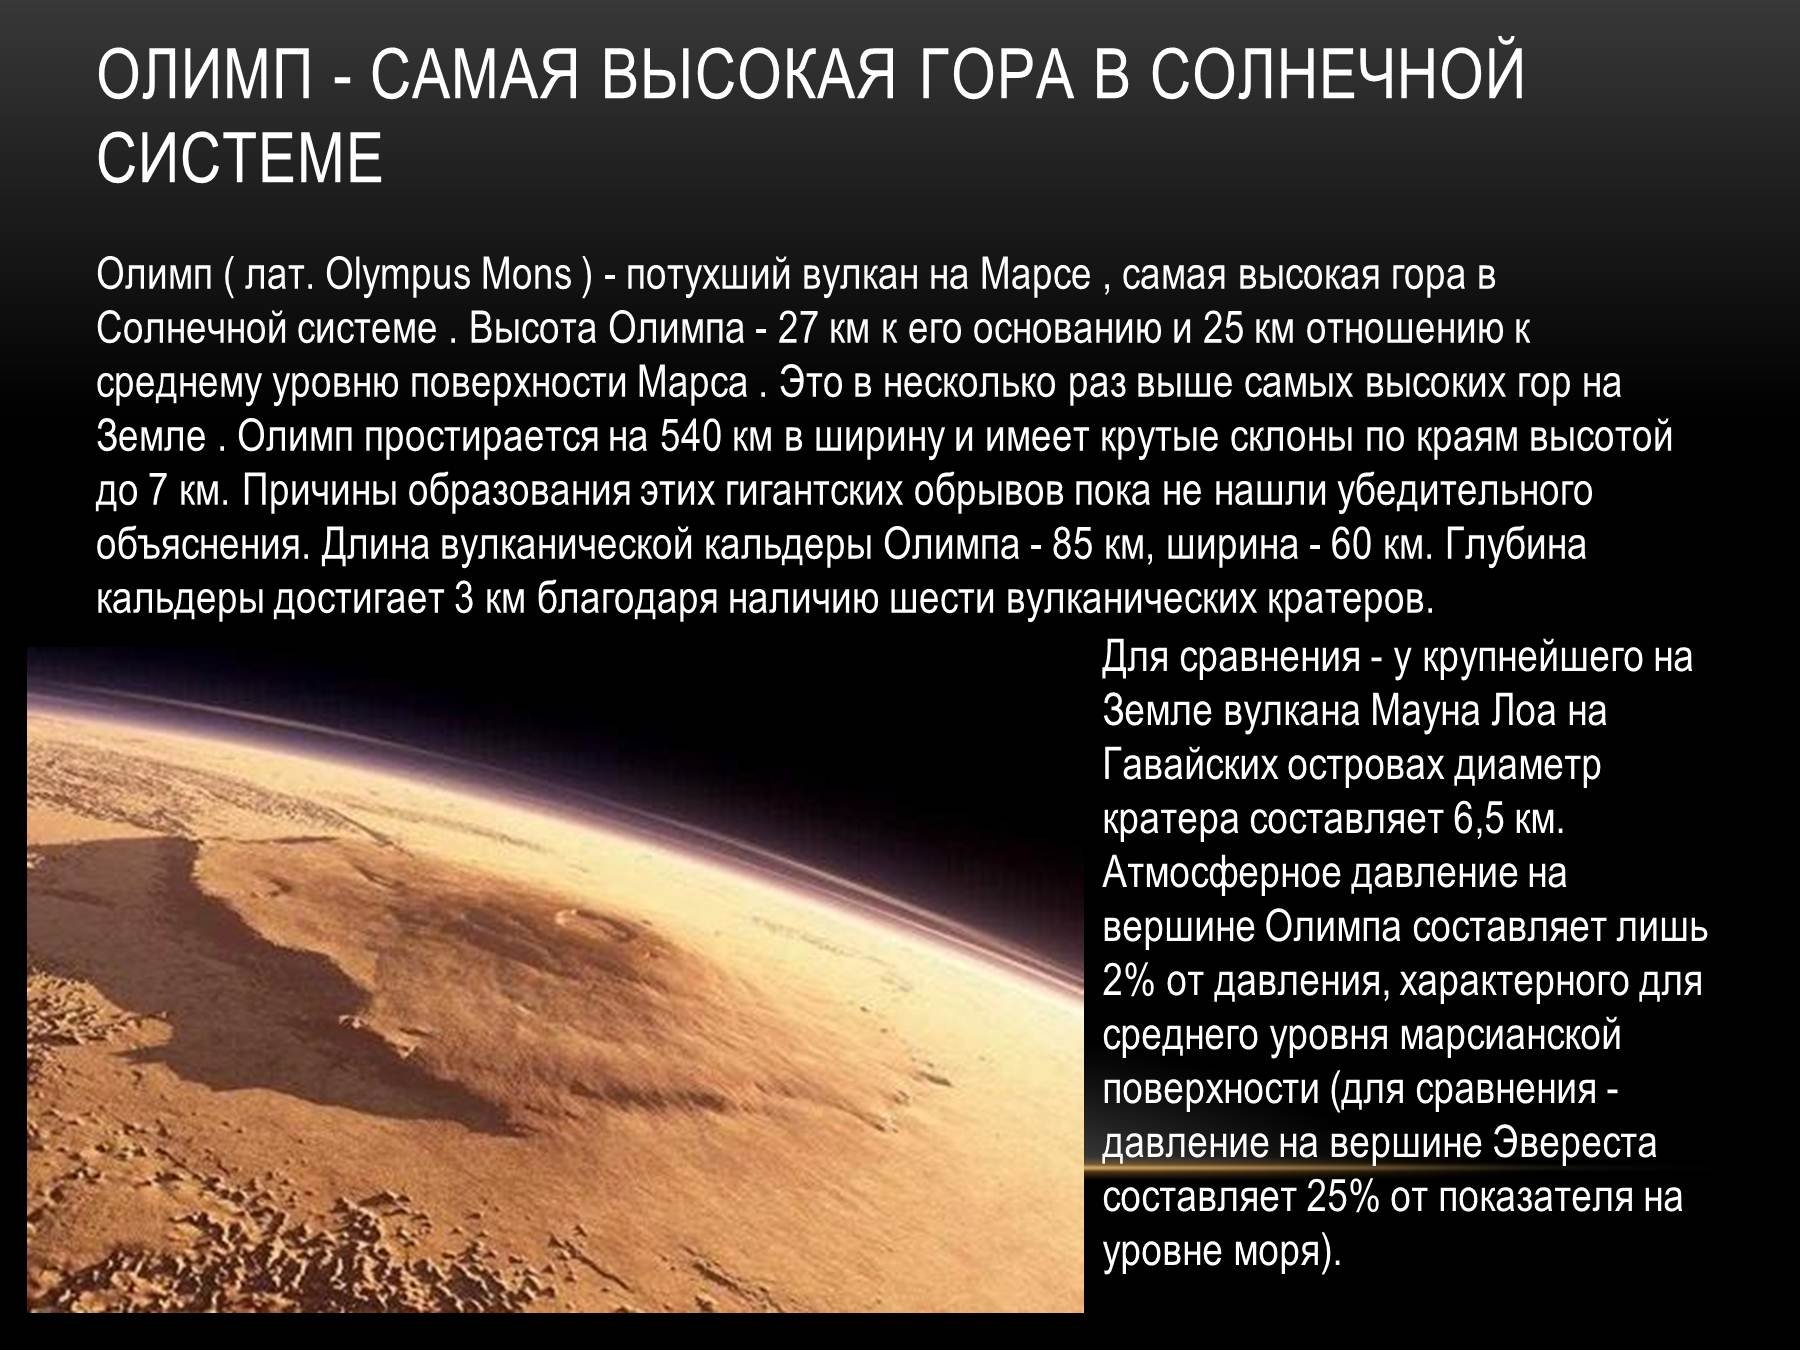 Марсианская гора Олимп самая высокая в солнечной системе